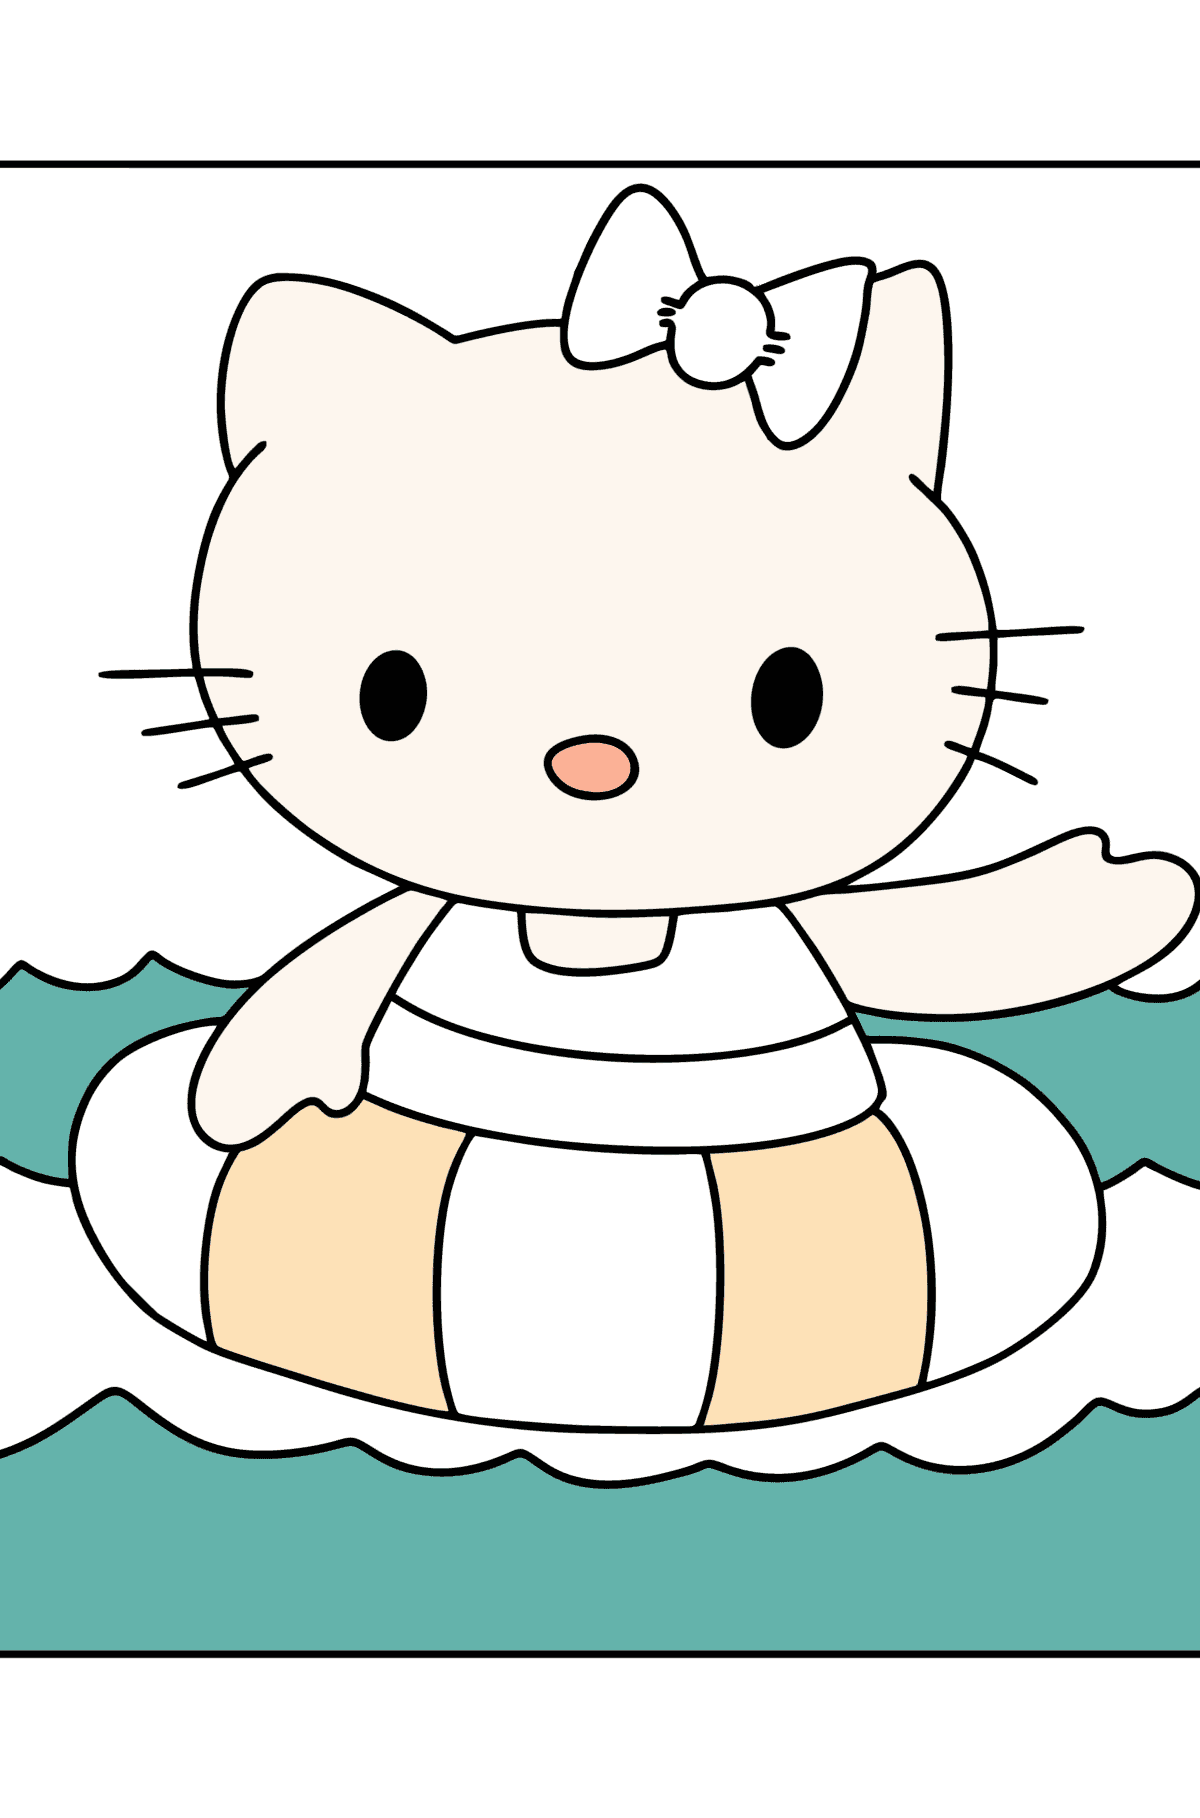 Tegning til fargelegging Hello Kitty svømmer - Tegninger til fargelegging for barn